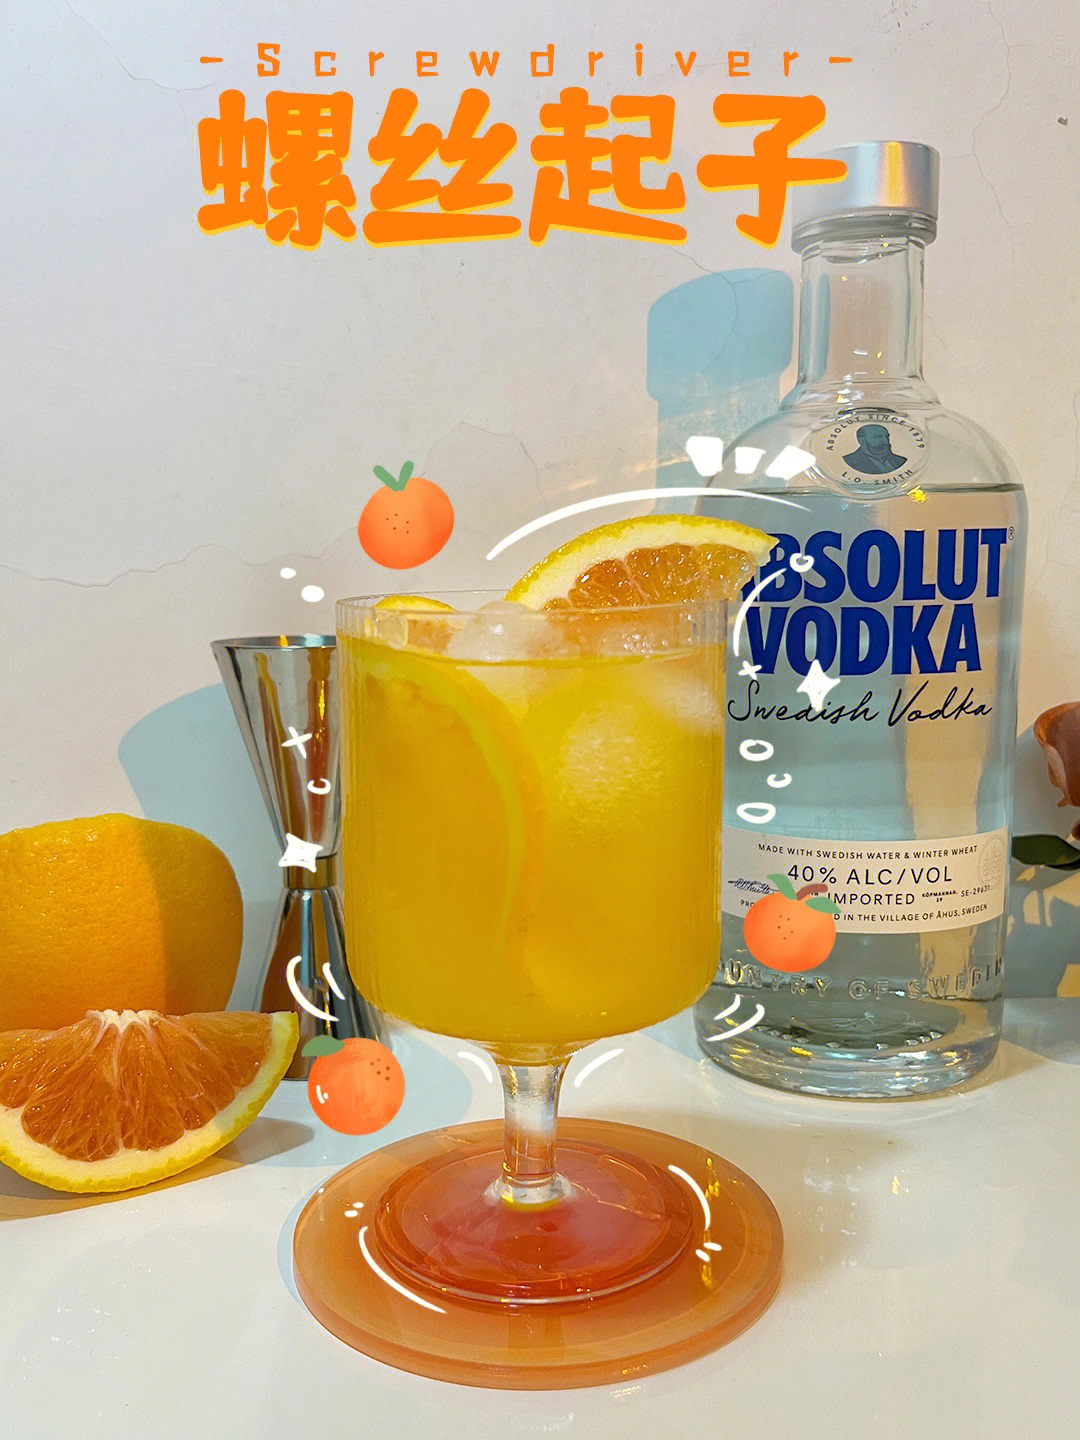 伏特加兑橙汁图片